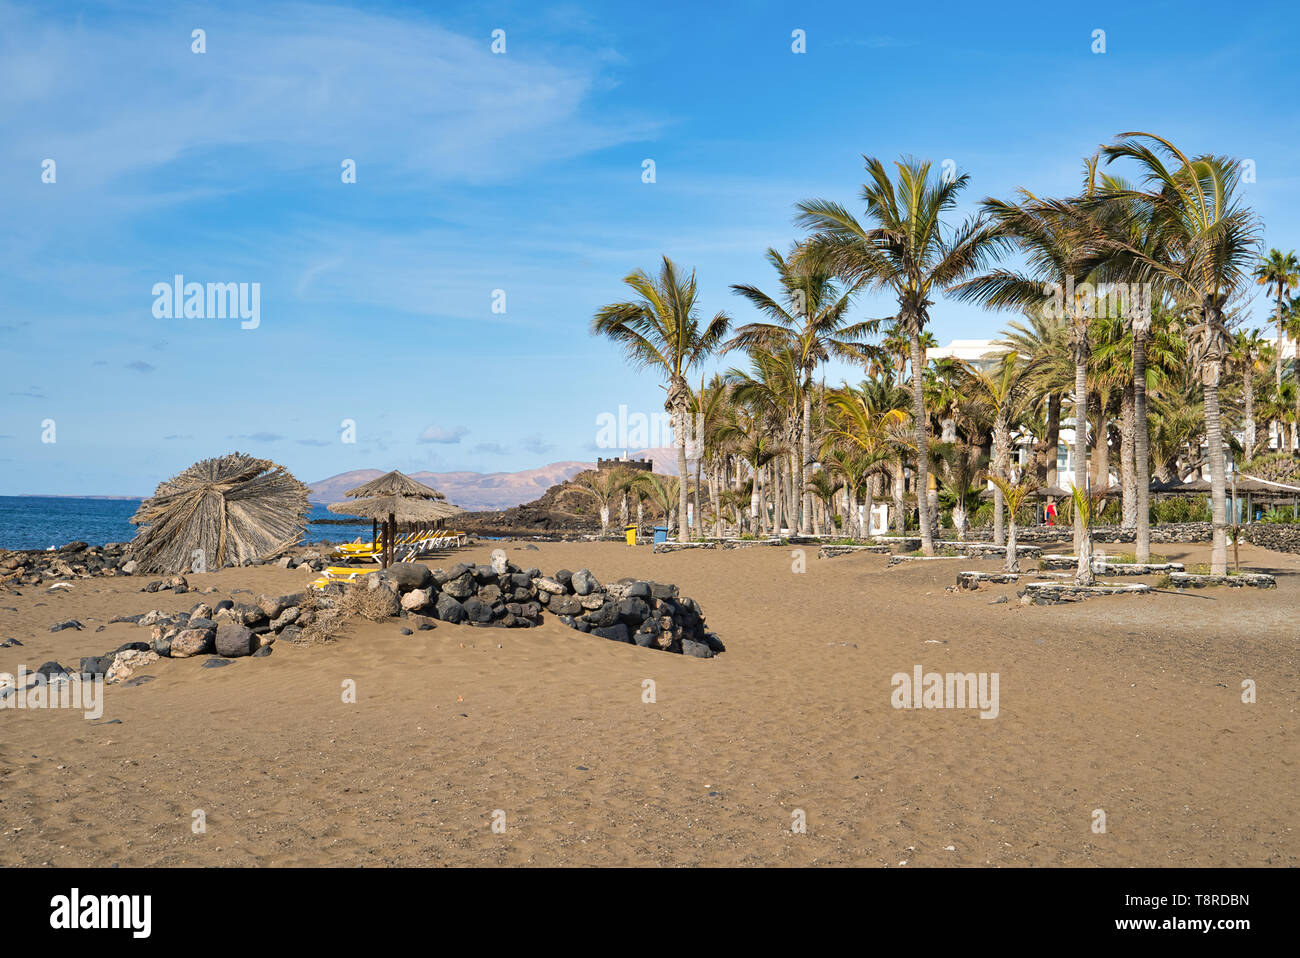 Lanzarote, Isole Canarie, Spagna. Provincia di Las Palmas. Sabbiosa spiaggia vulcanica. Le pietre sulla sabbia, coltivazione di palme, lettini da sole e ombrelloni. Il riposo Foto Stock